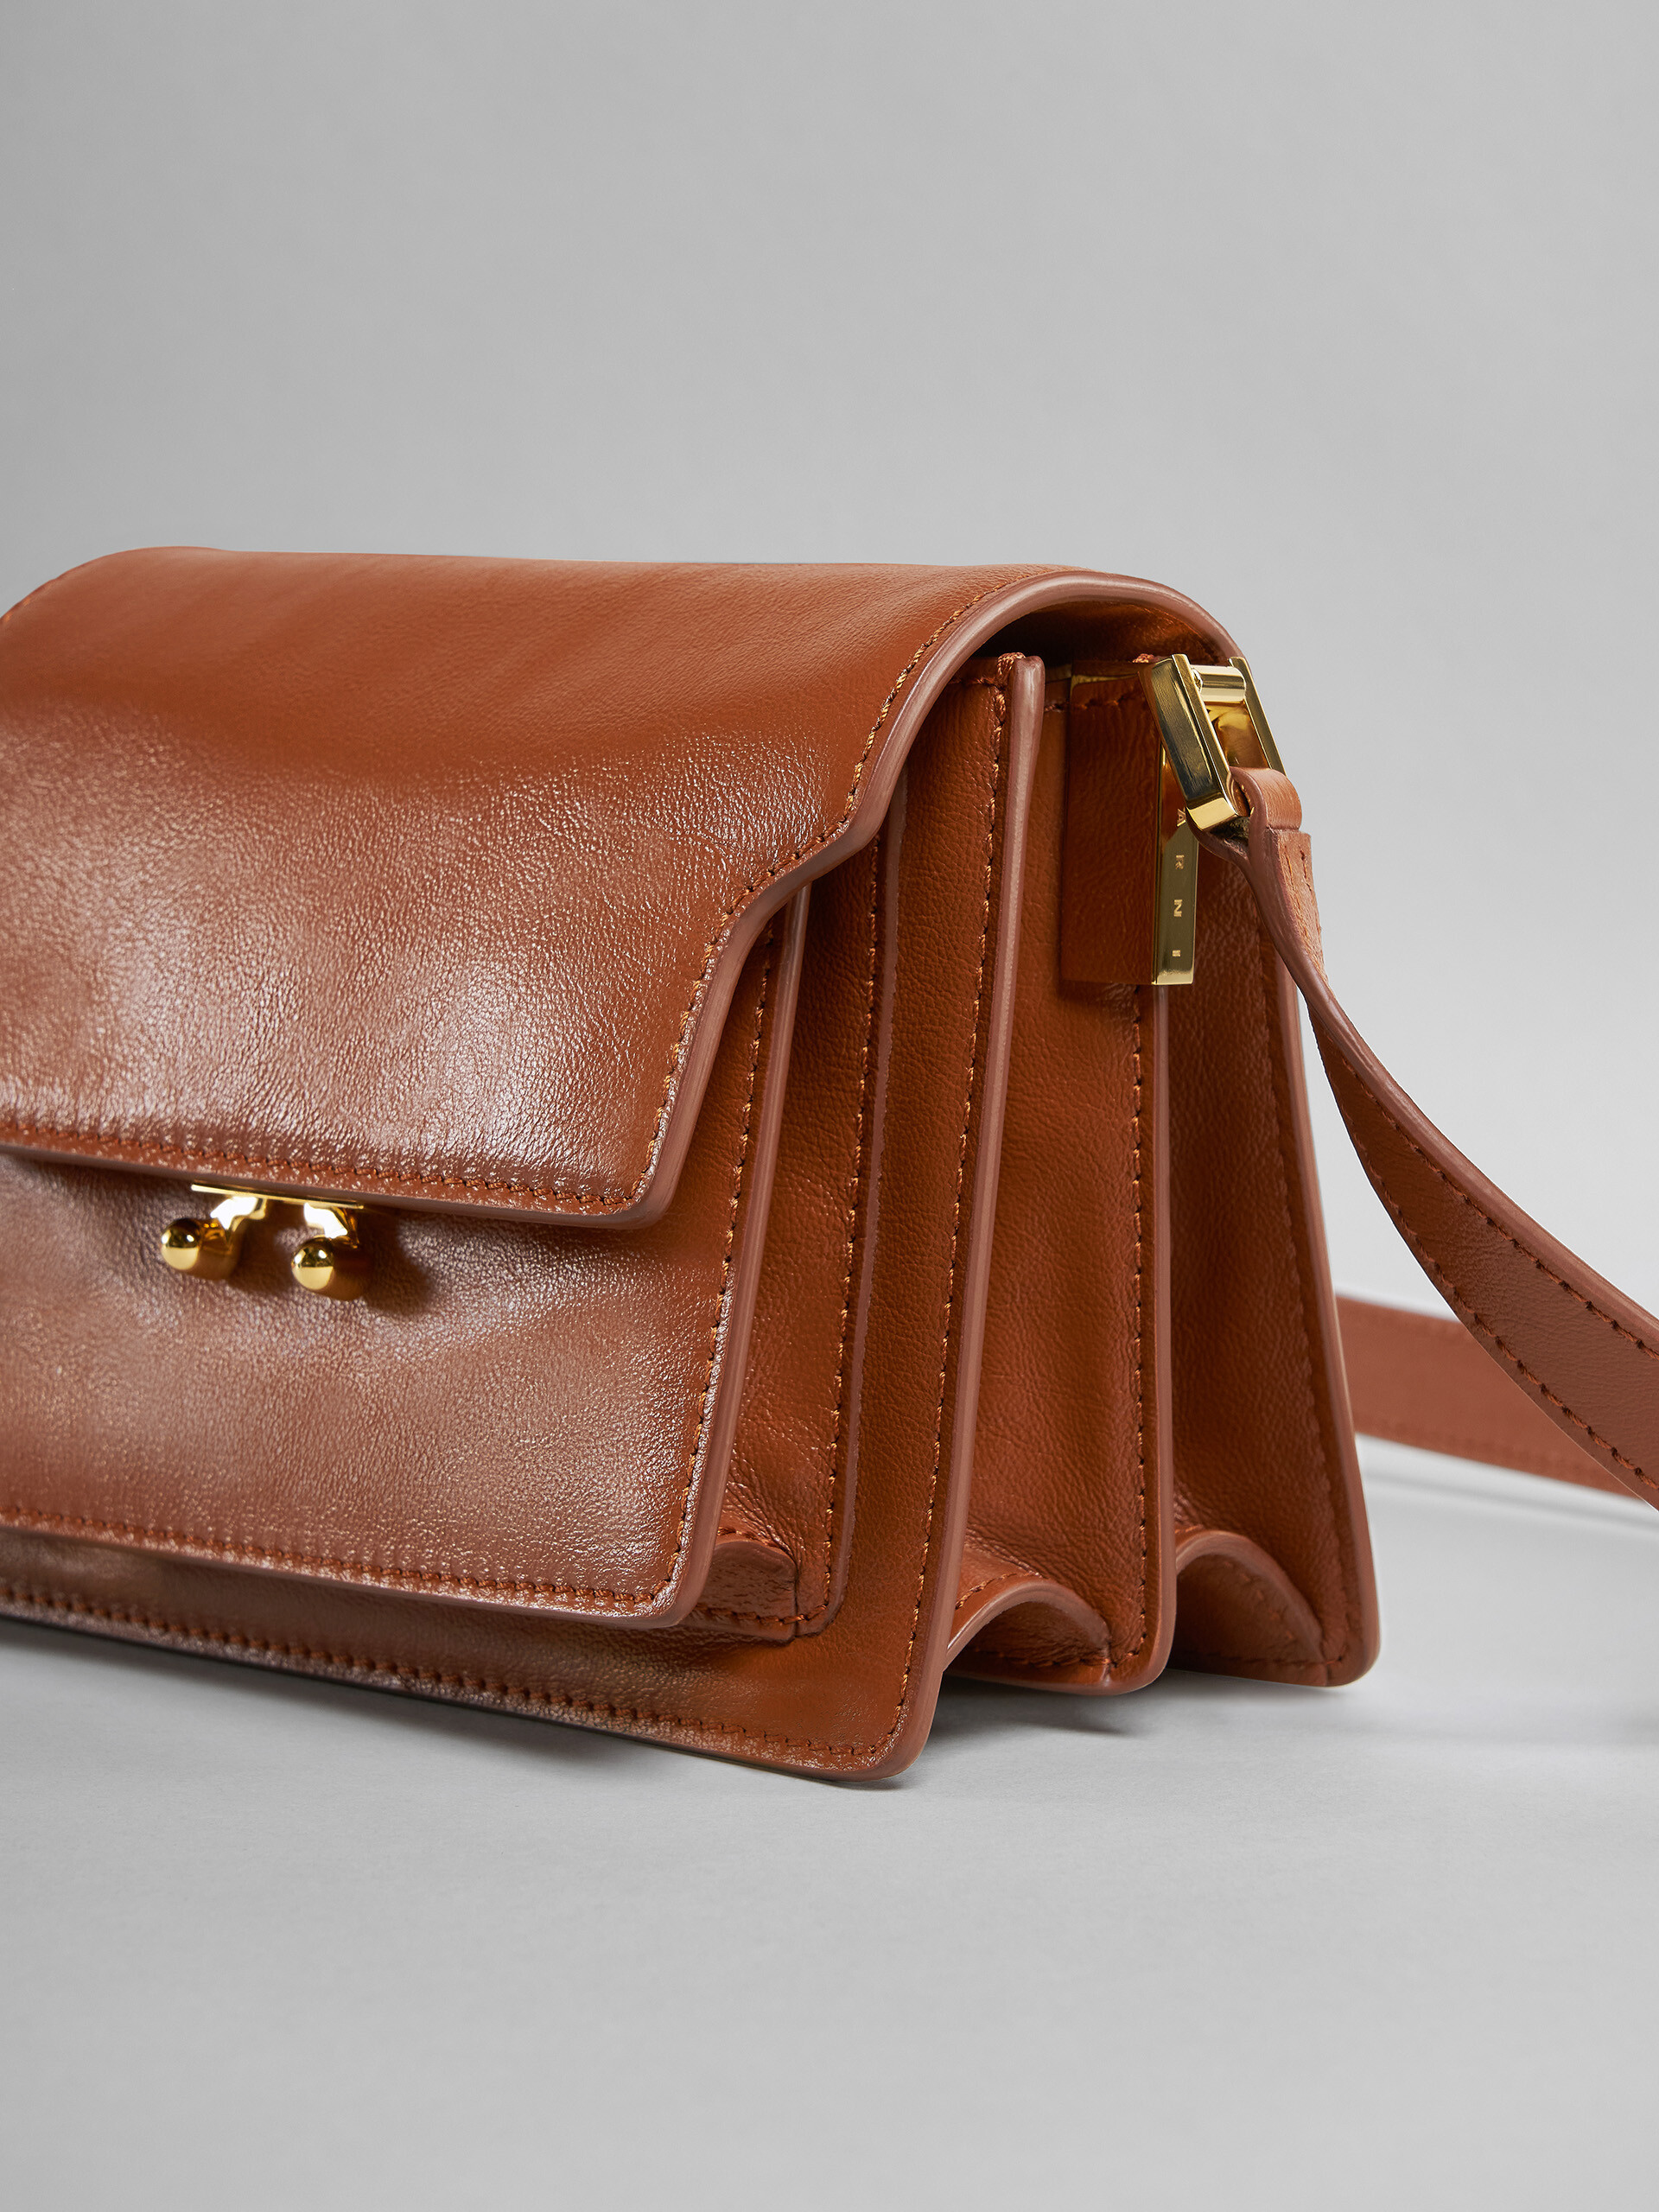 Mini-sac TRUNK SOFT en cuir rose - Sacs portés épaule - Image 5